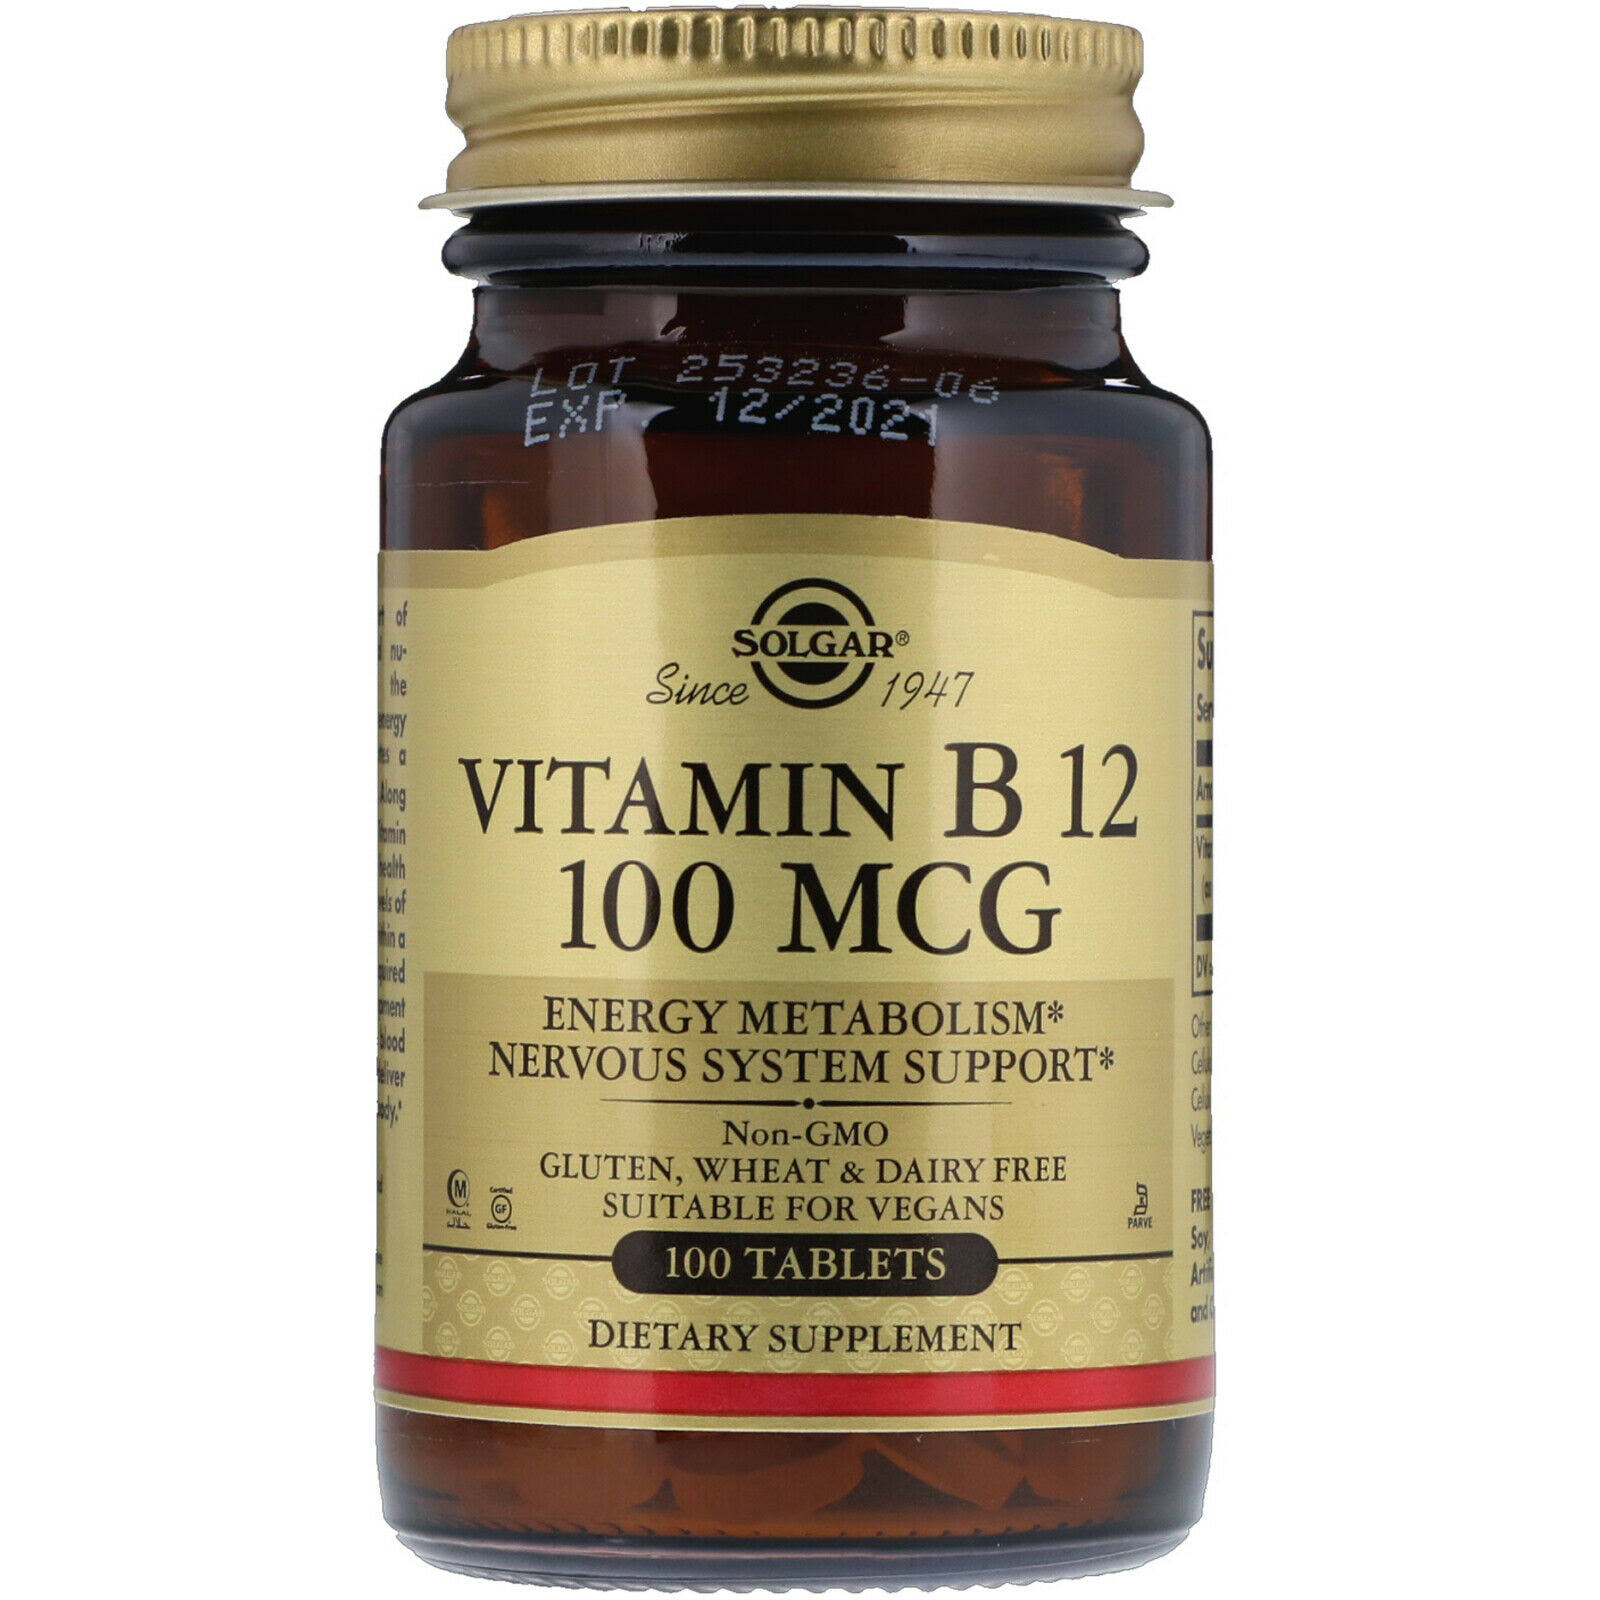 Solgar Vitamin B12 100mcg Nervous System Support - 100 Tablets